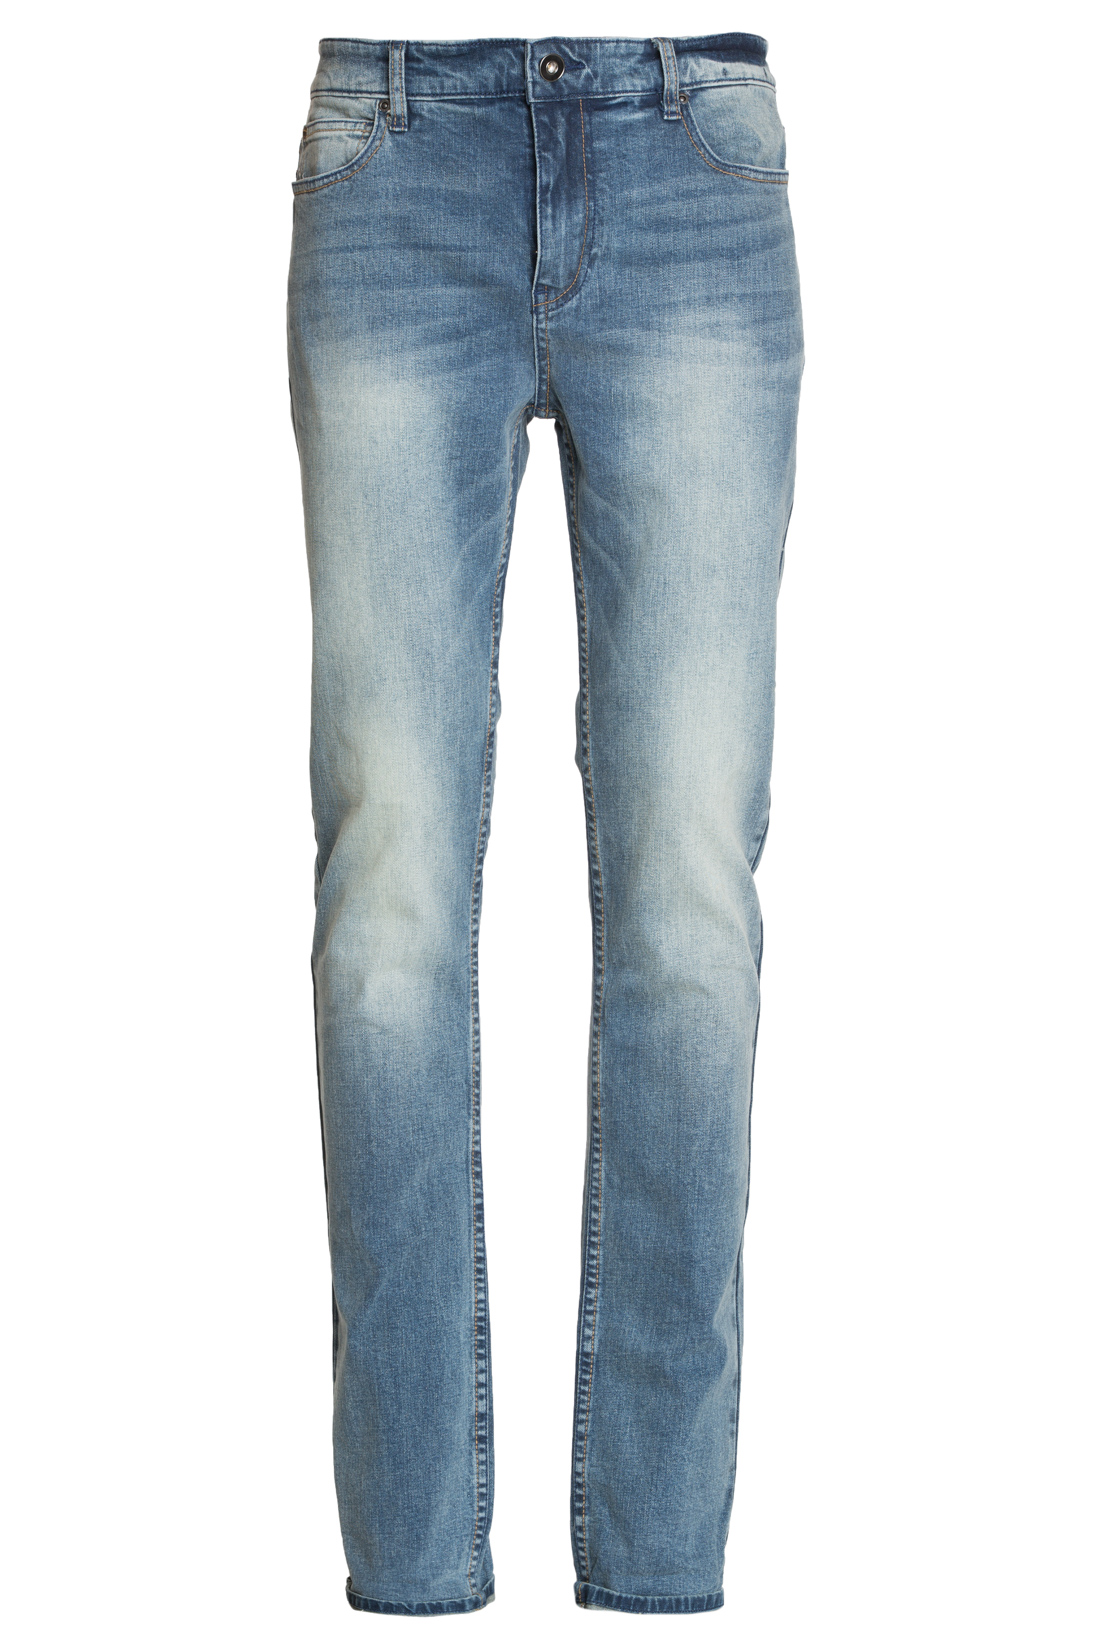 Зауженные джинсы с выбеленностями (арт. baon B807005), размер 33, цвет blue denim#голубой Зауженные джинсы с выбеленностями (арт. baon B807005) - фото 3